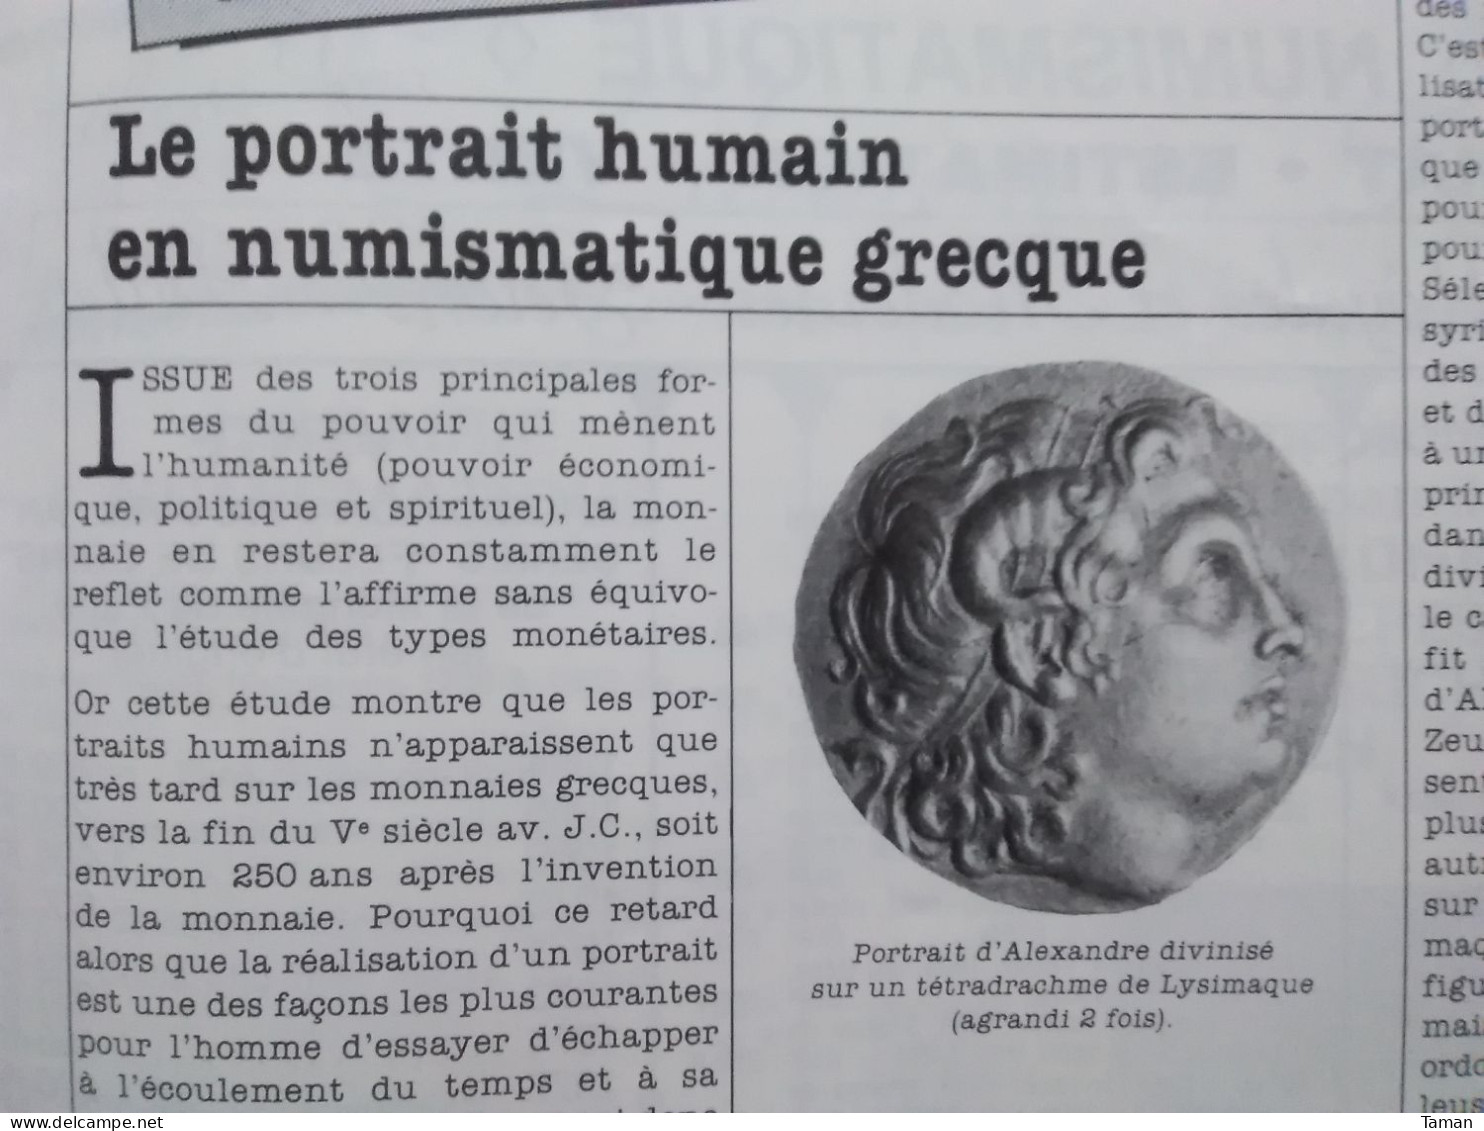 Numismatique & change - Rome Postume - 5 F Louis Philippe - Grèce antique - Monnaies royales - Belgique